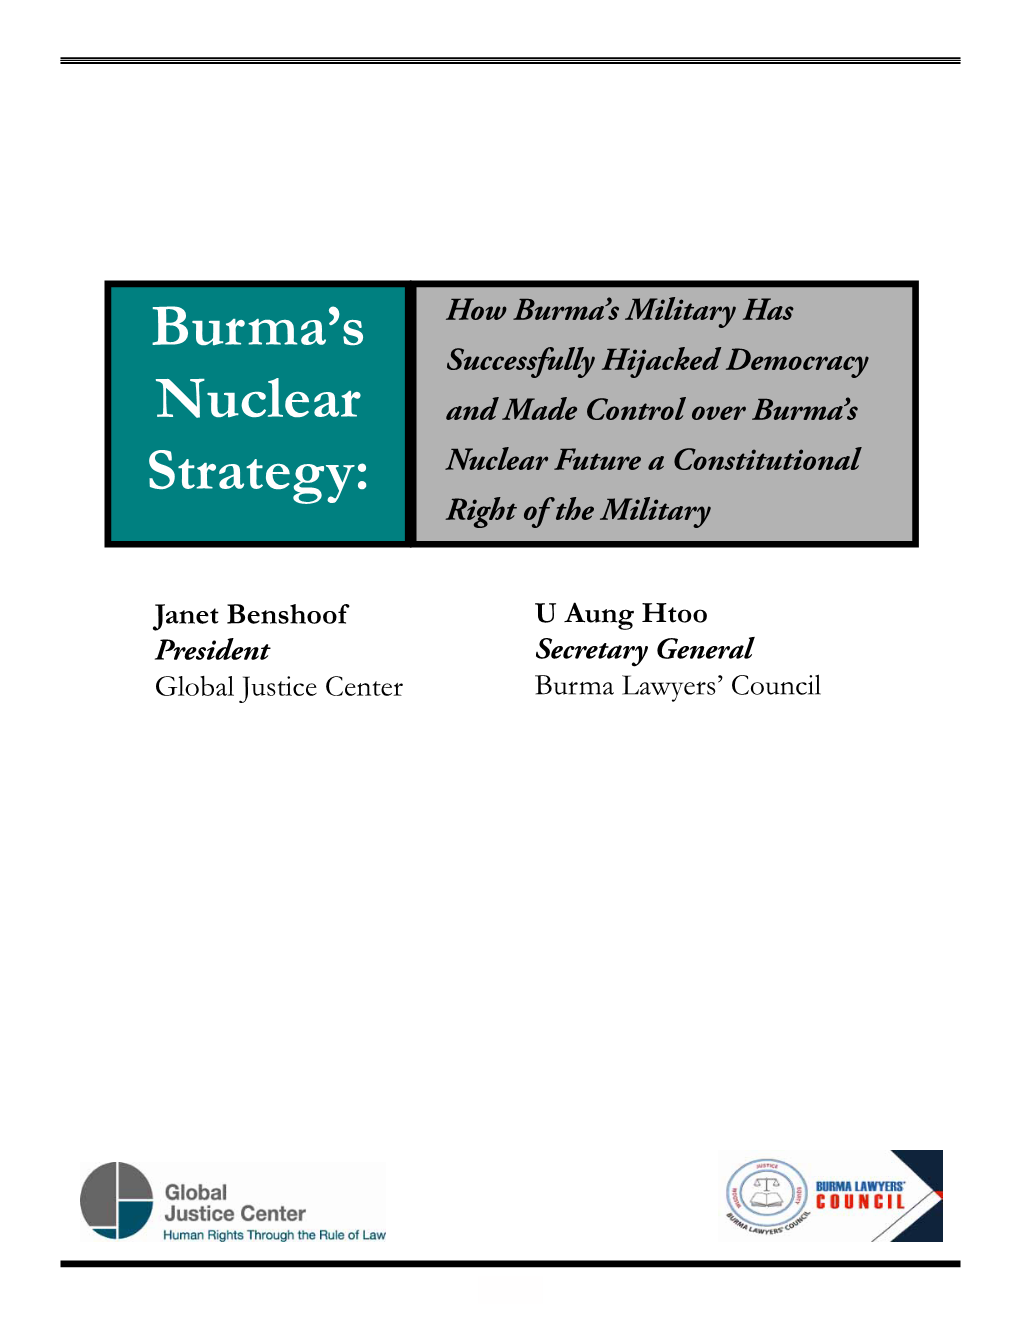 Burma's Nuclear Strategy